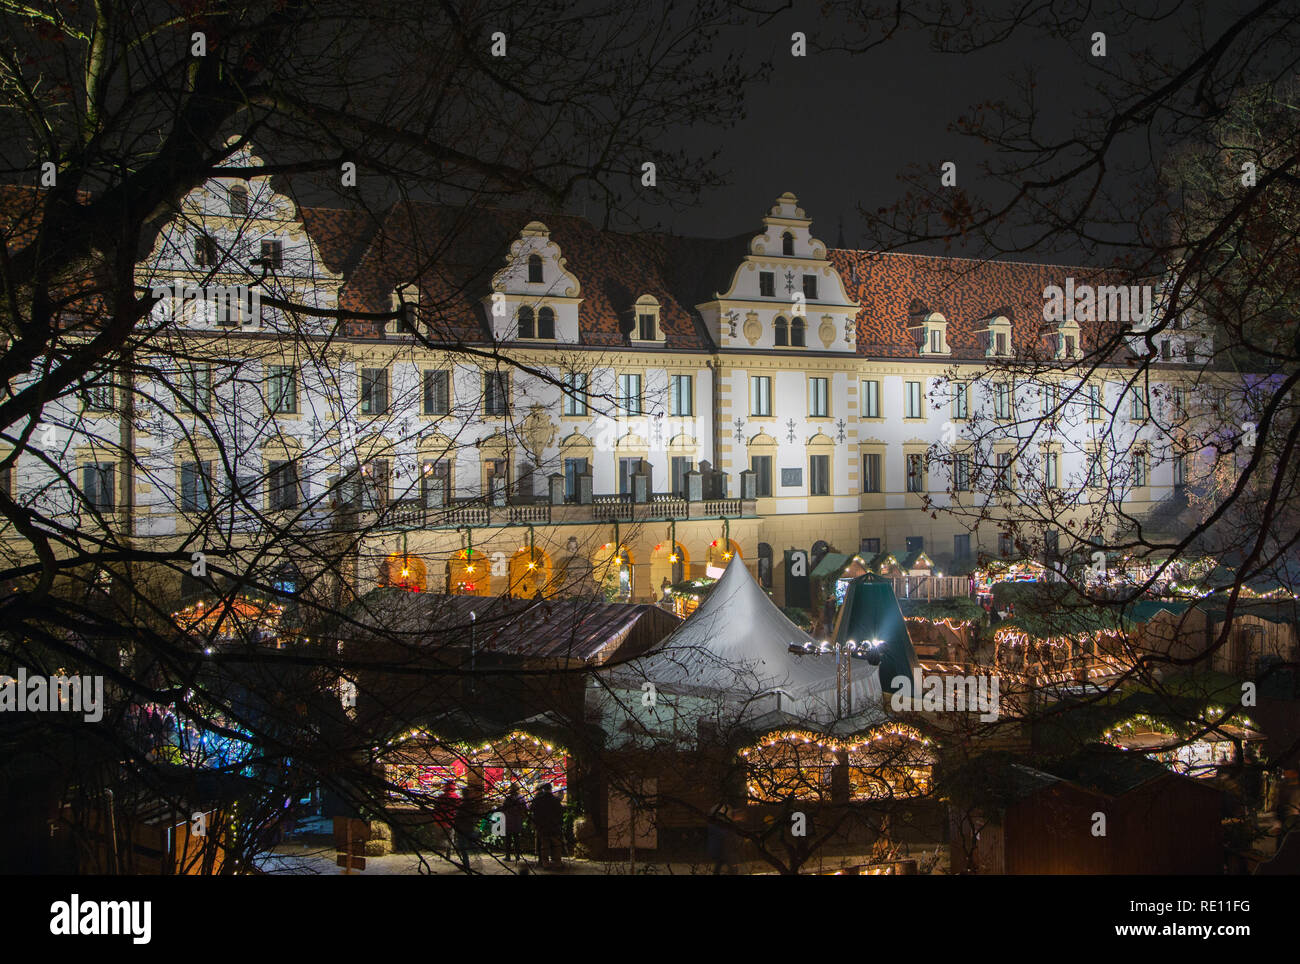 La facciata di Schloss Thurn & Taxis illuminata di notte, con il suo mercato di Natale nel cortile Foto Stock